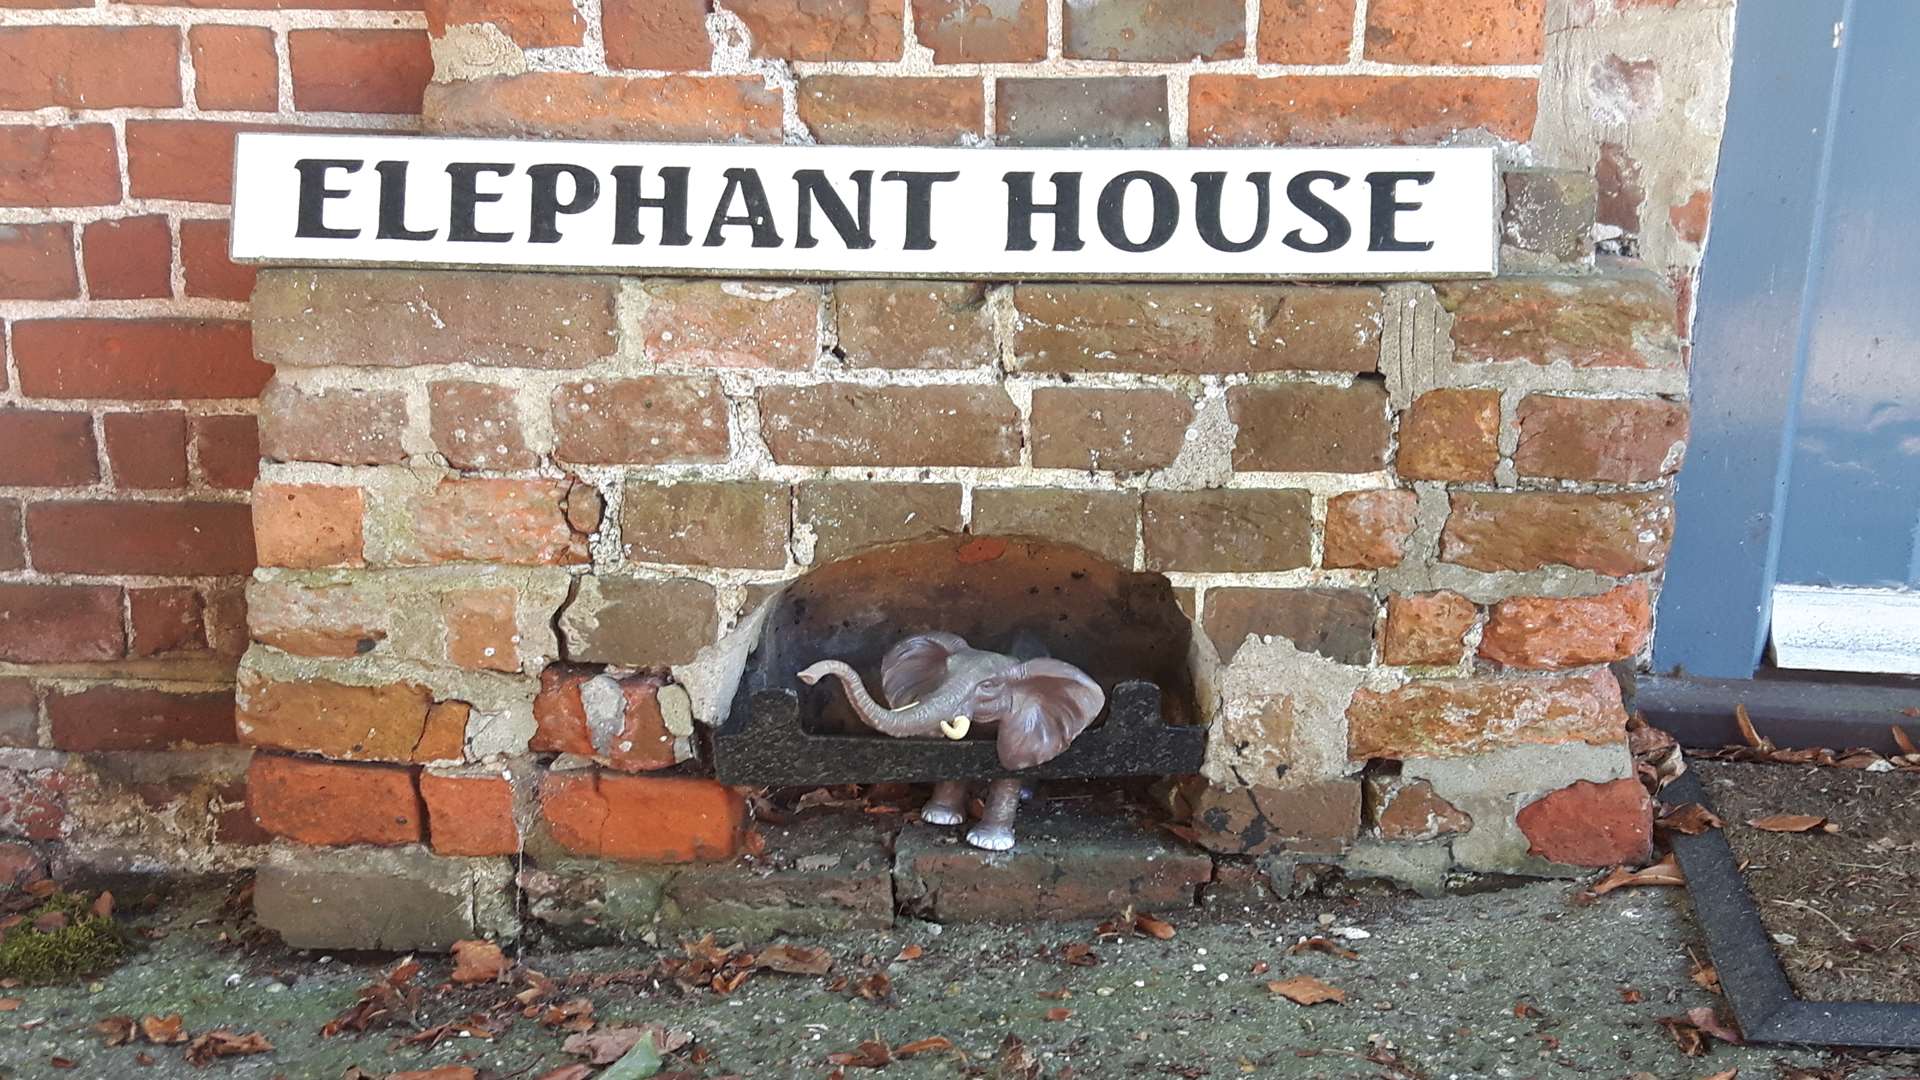 Outside Elephant House.